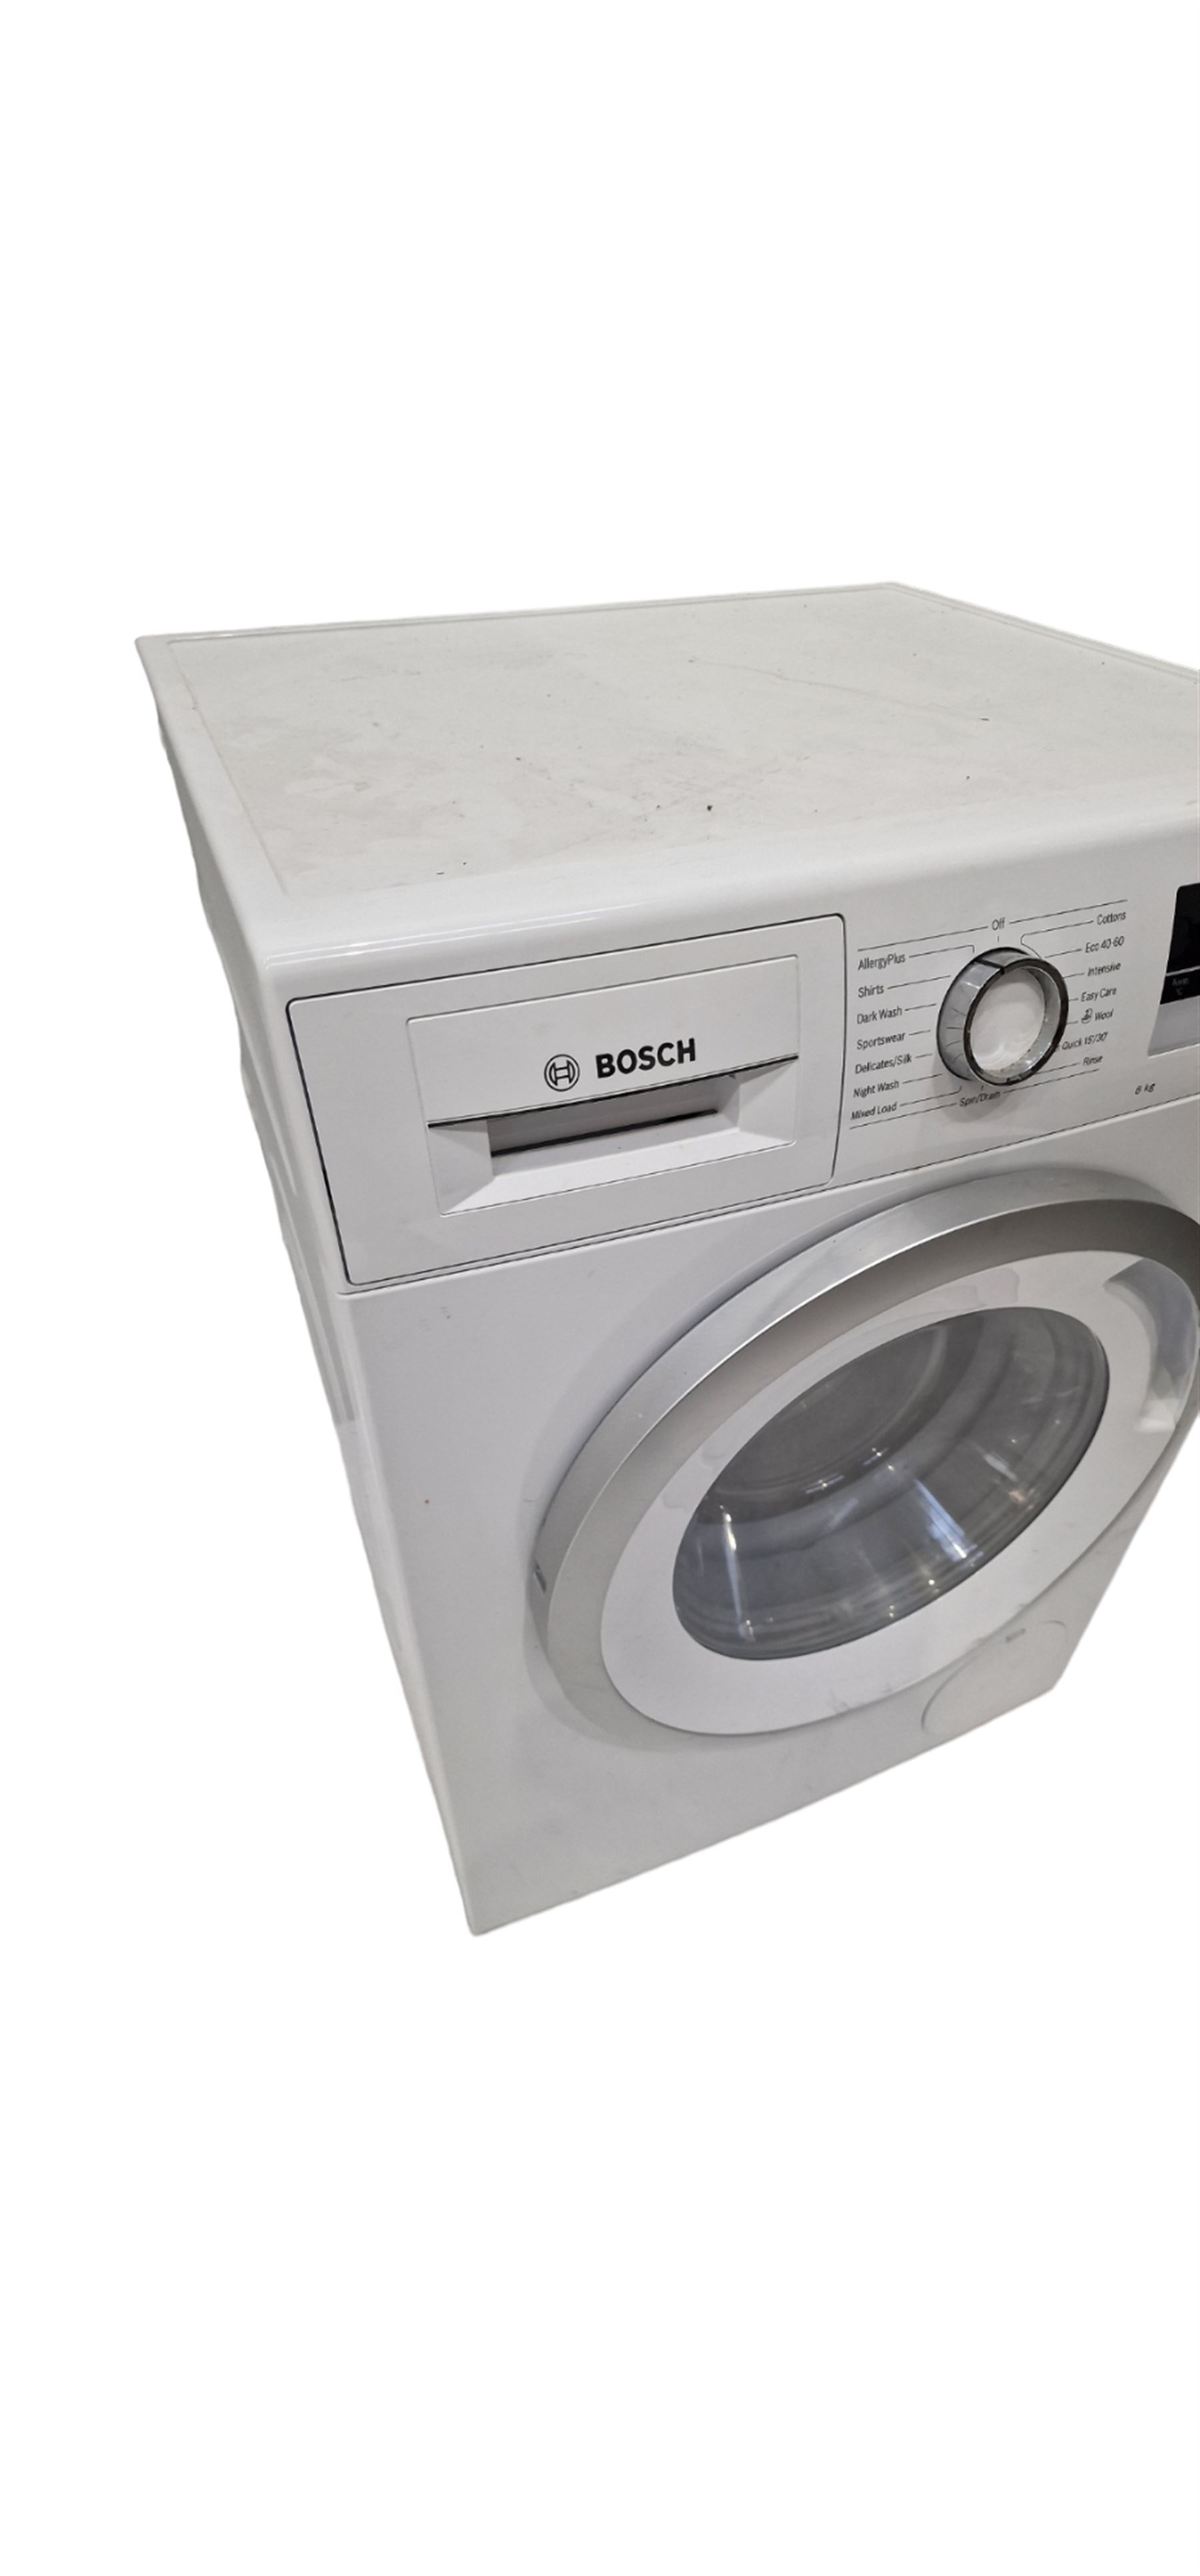 Bosch EcoSilence Drive washing machine 8kg - Image 2 of 3